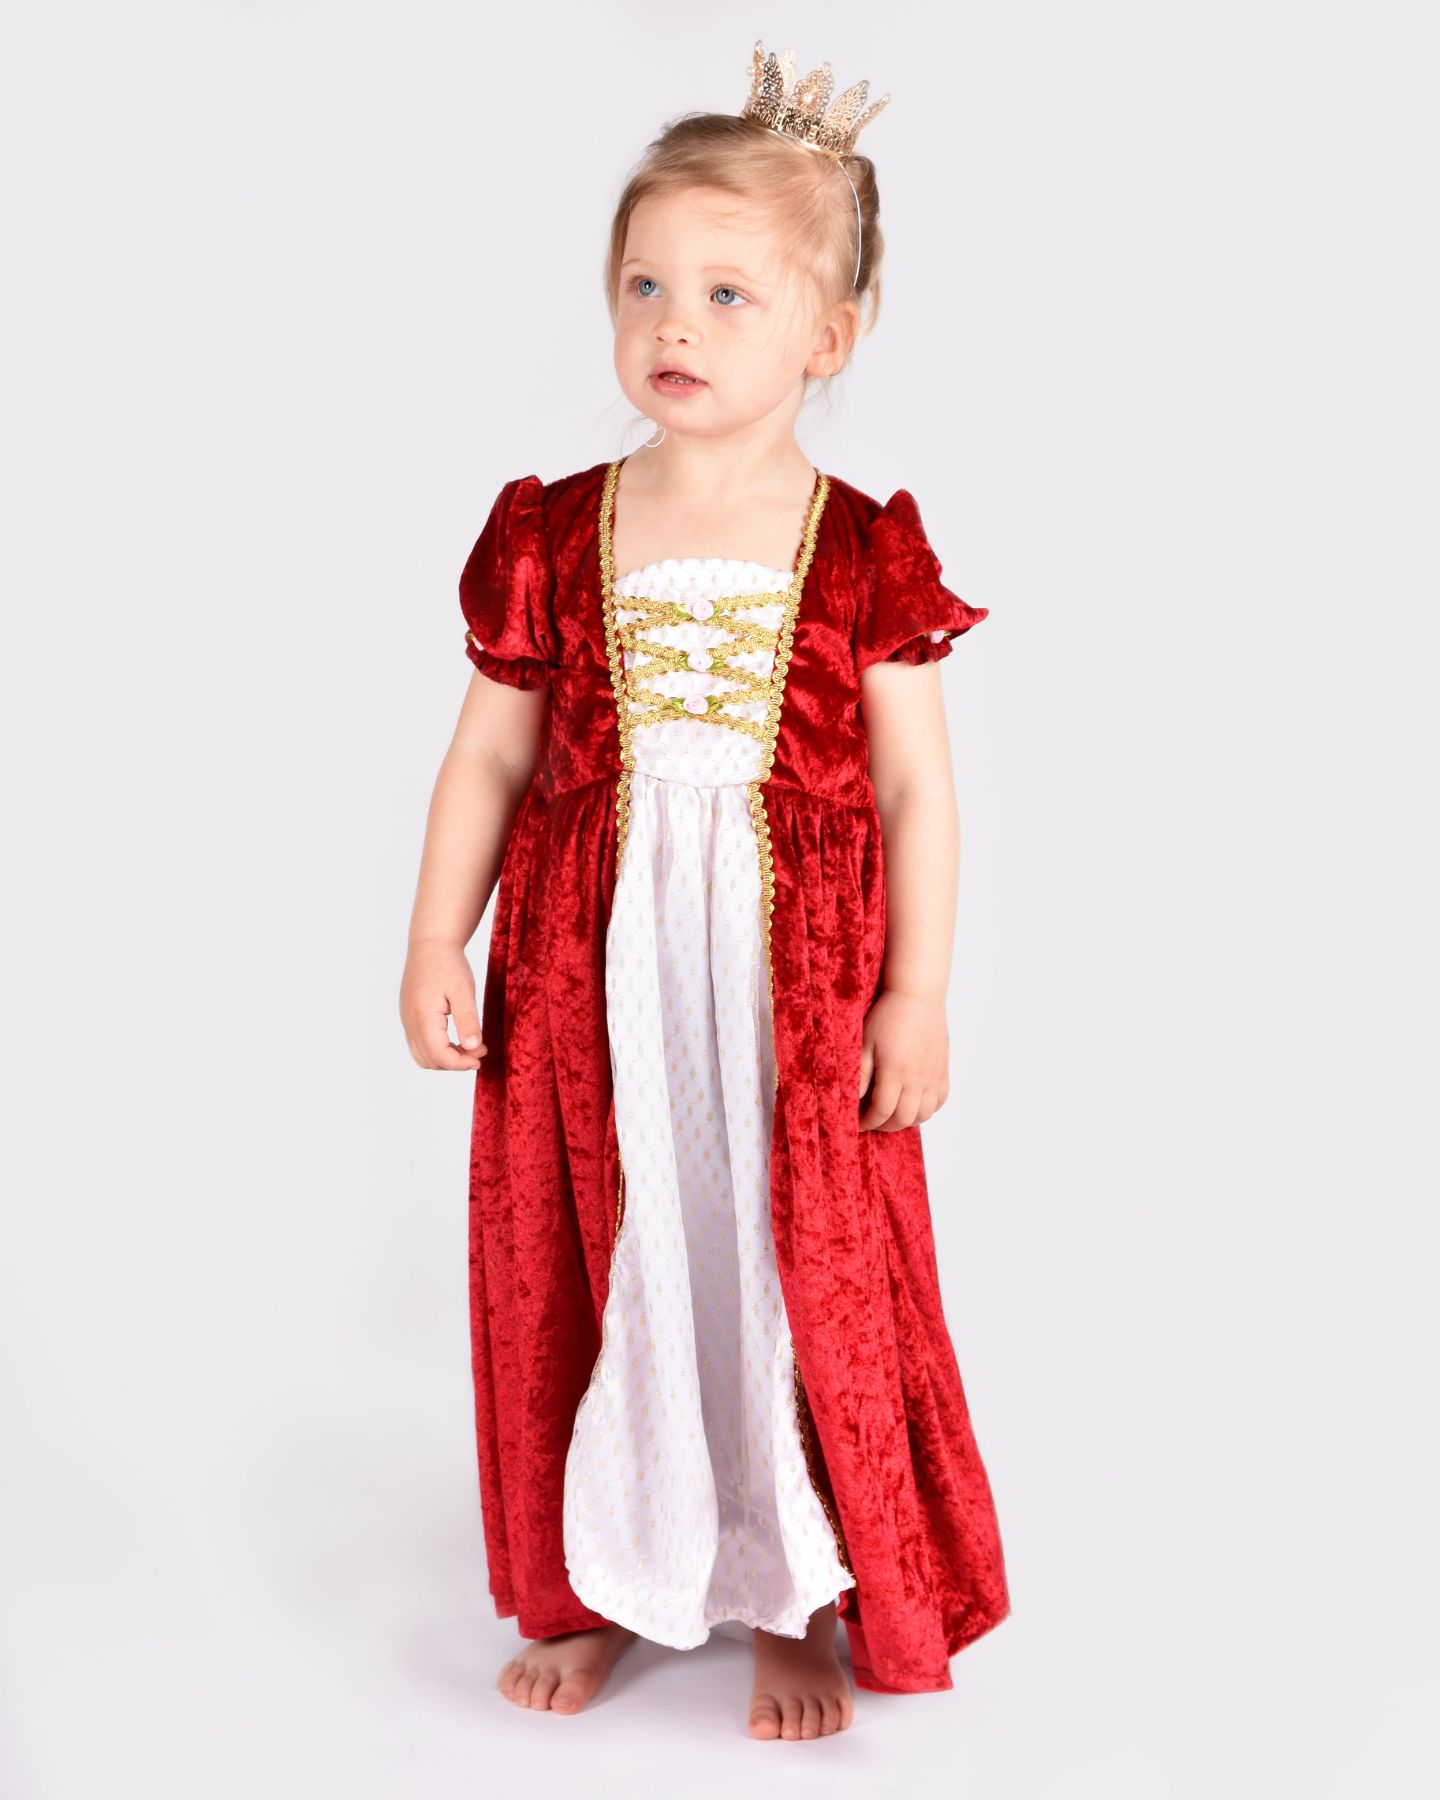 Flicka iklädd en röd prinsessklänning och guldig prinsesskrona